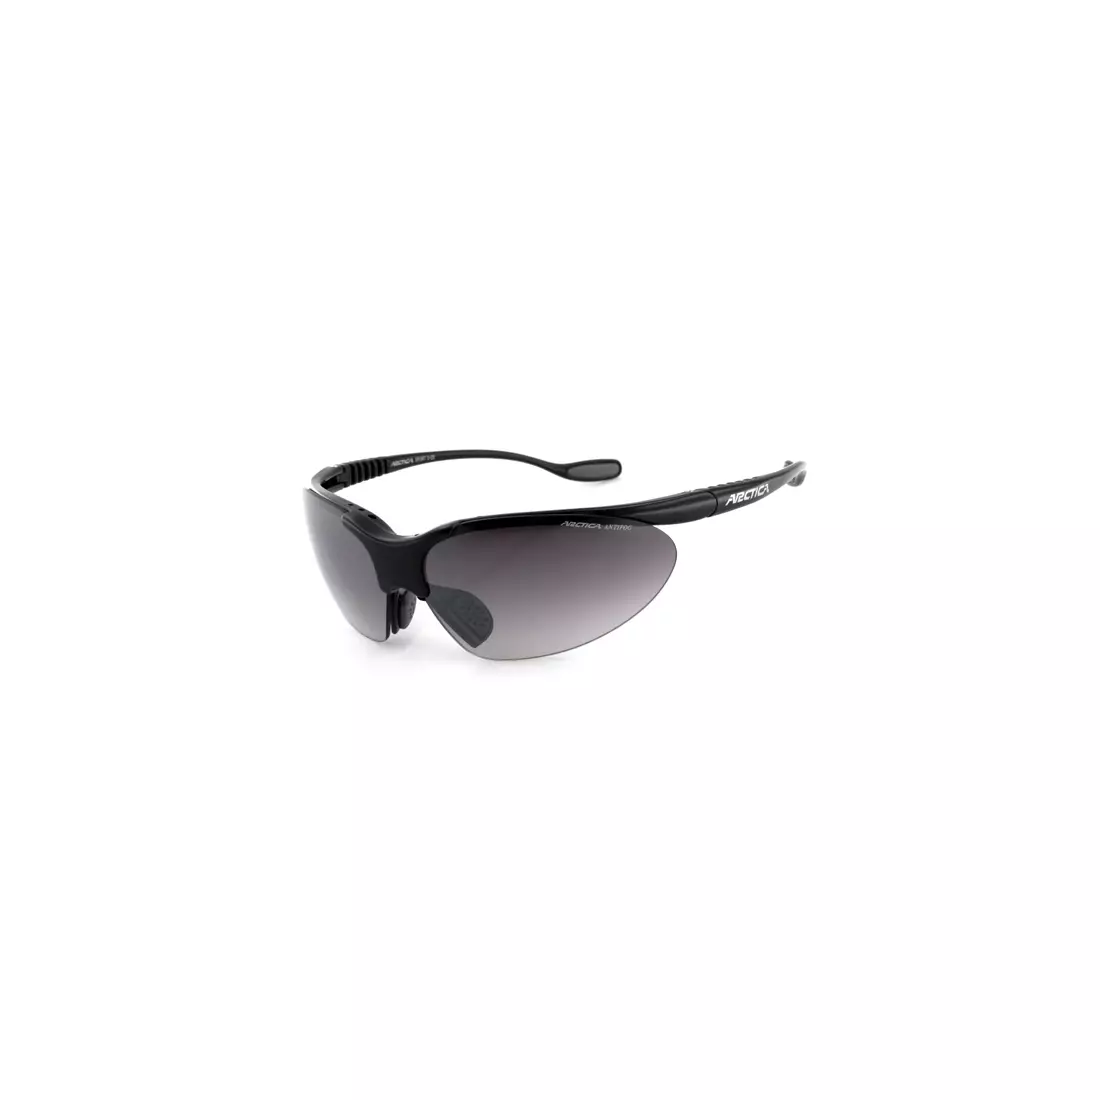 Sportovní brýle ARCTICA S-25 - barva: Black